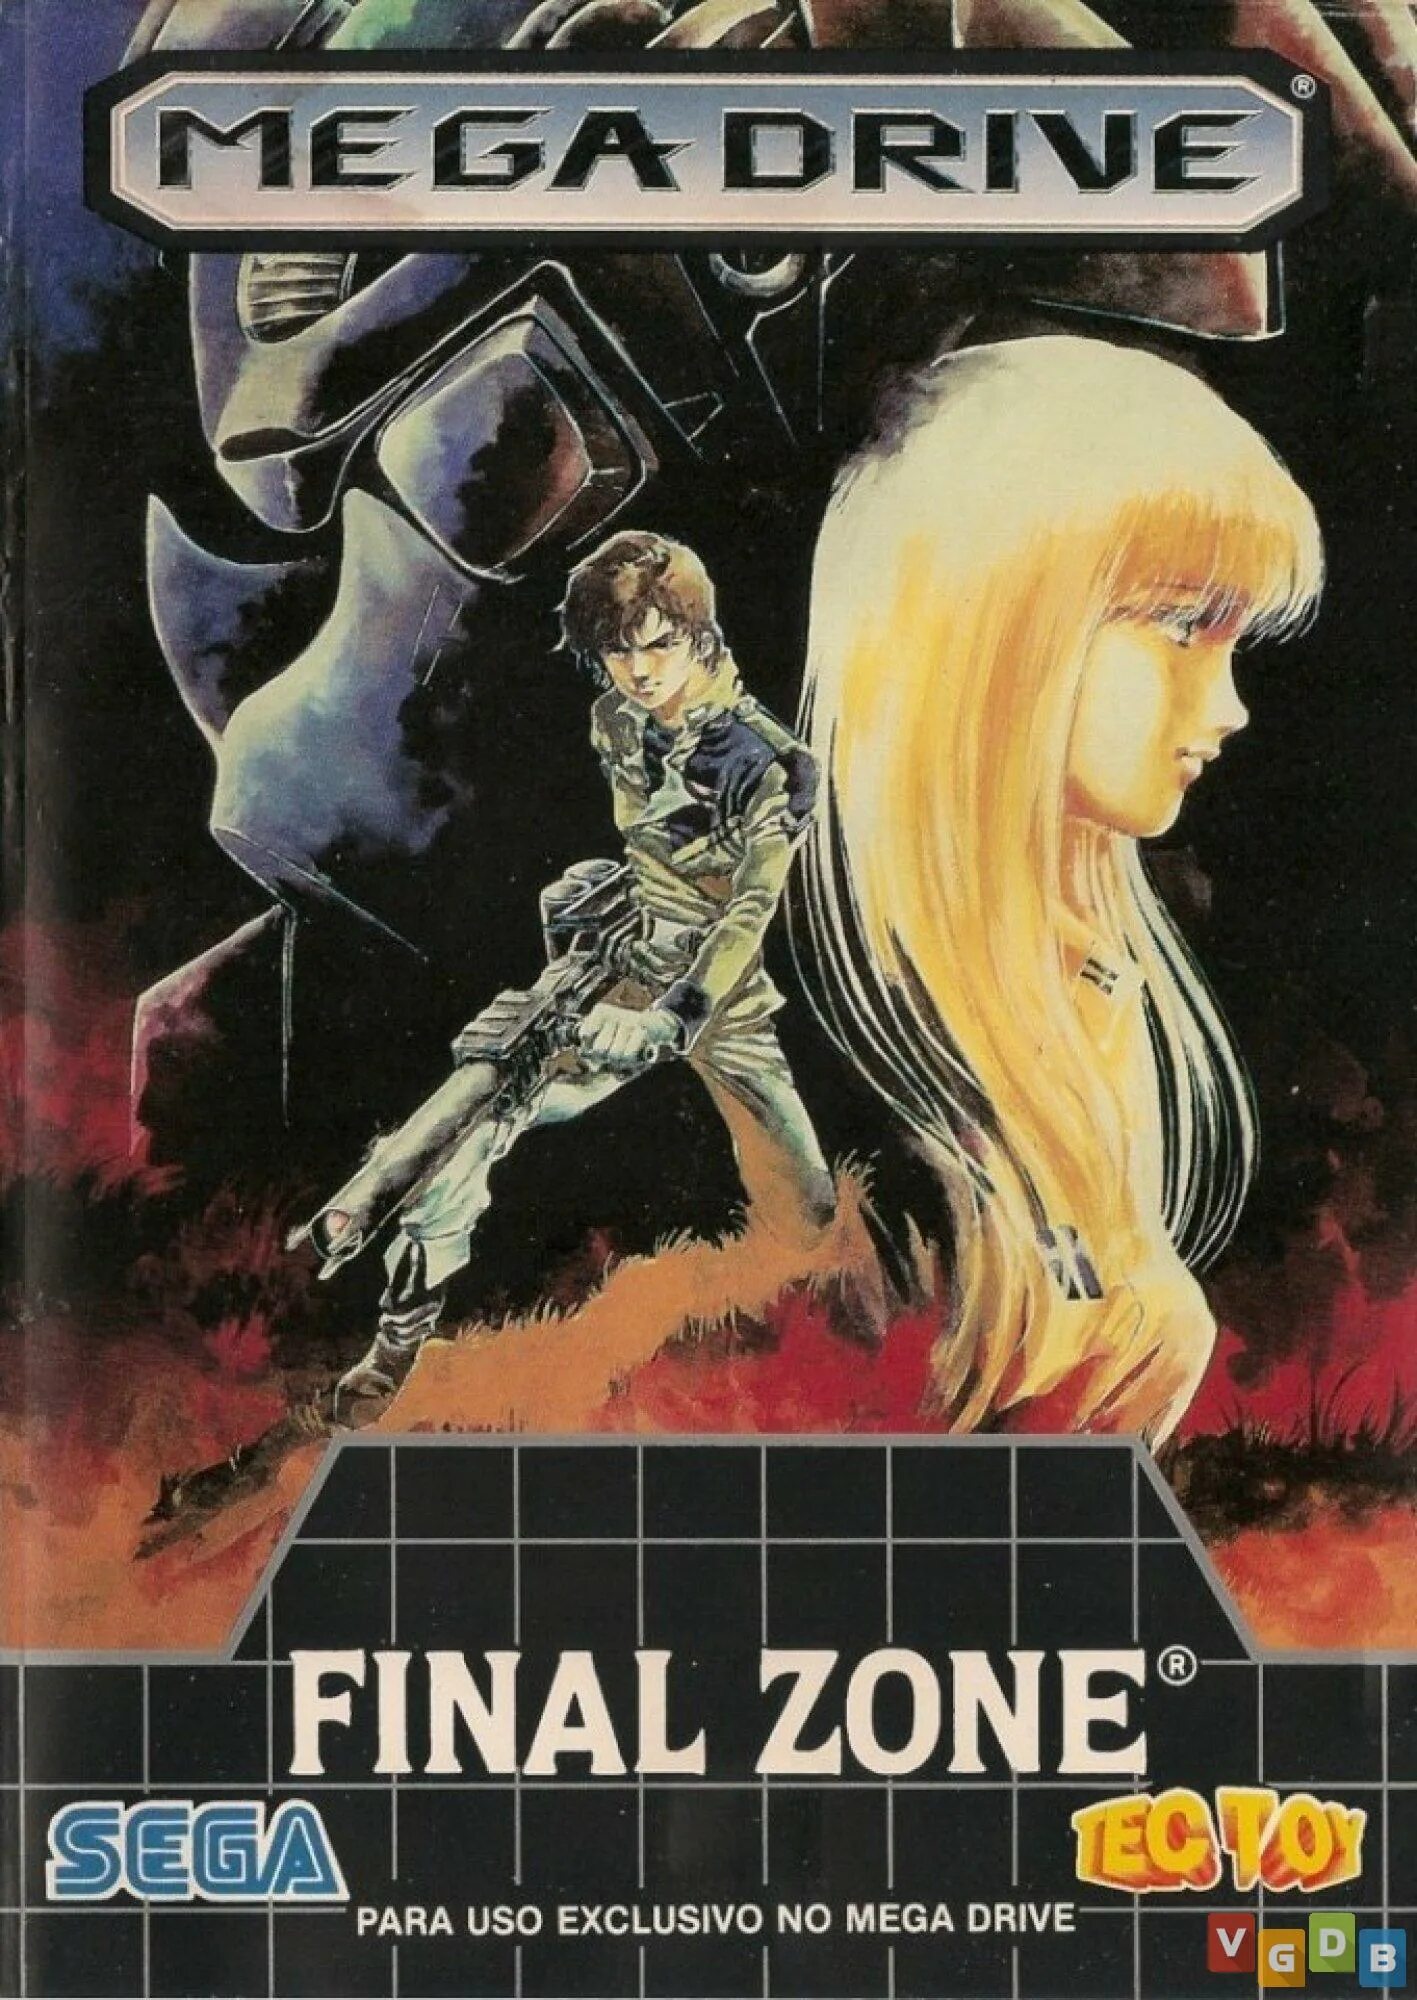 Final zone fnf. Final Zone. Final Zone Sega. Final Zone (Sega Megadrive). FZ Senki Axis _ Final Zone Sega.